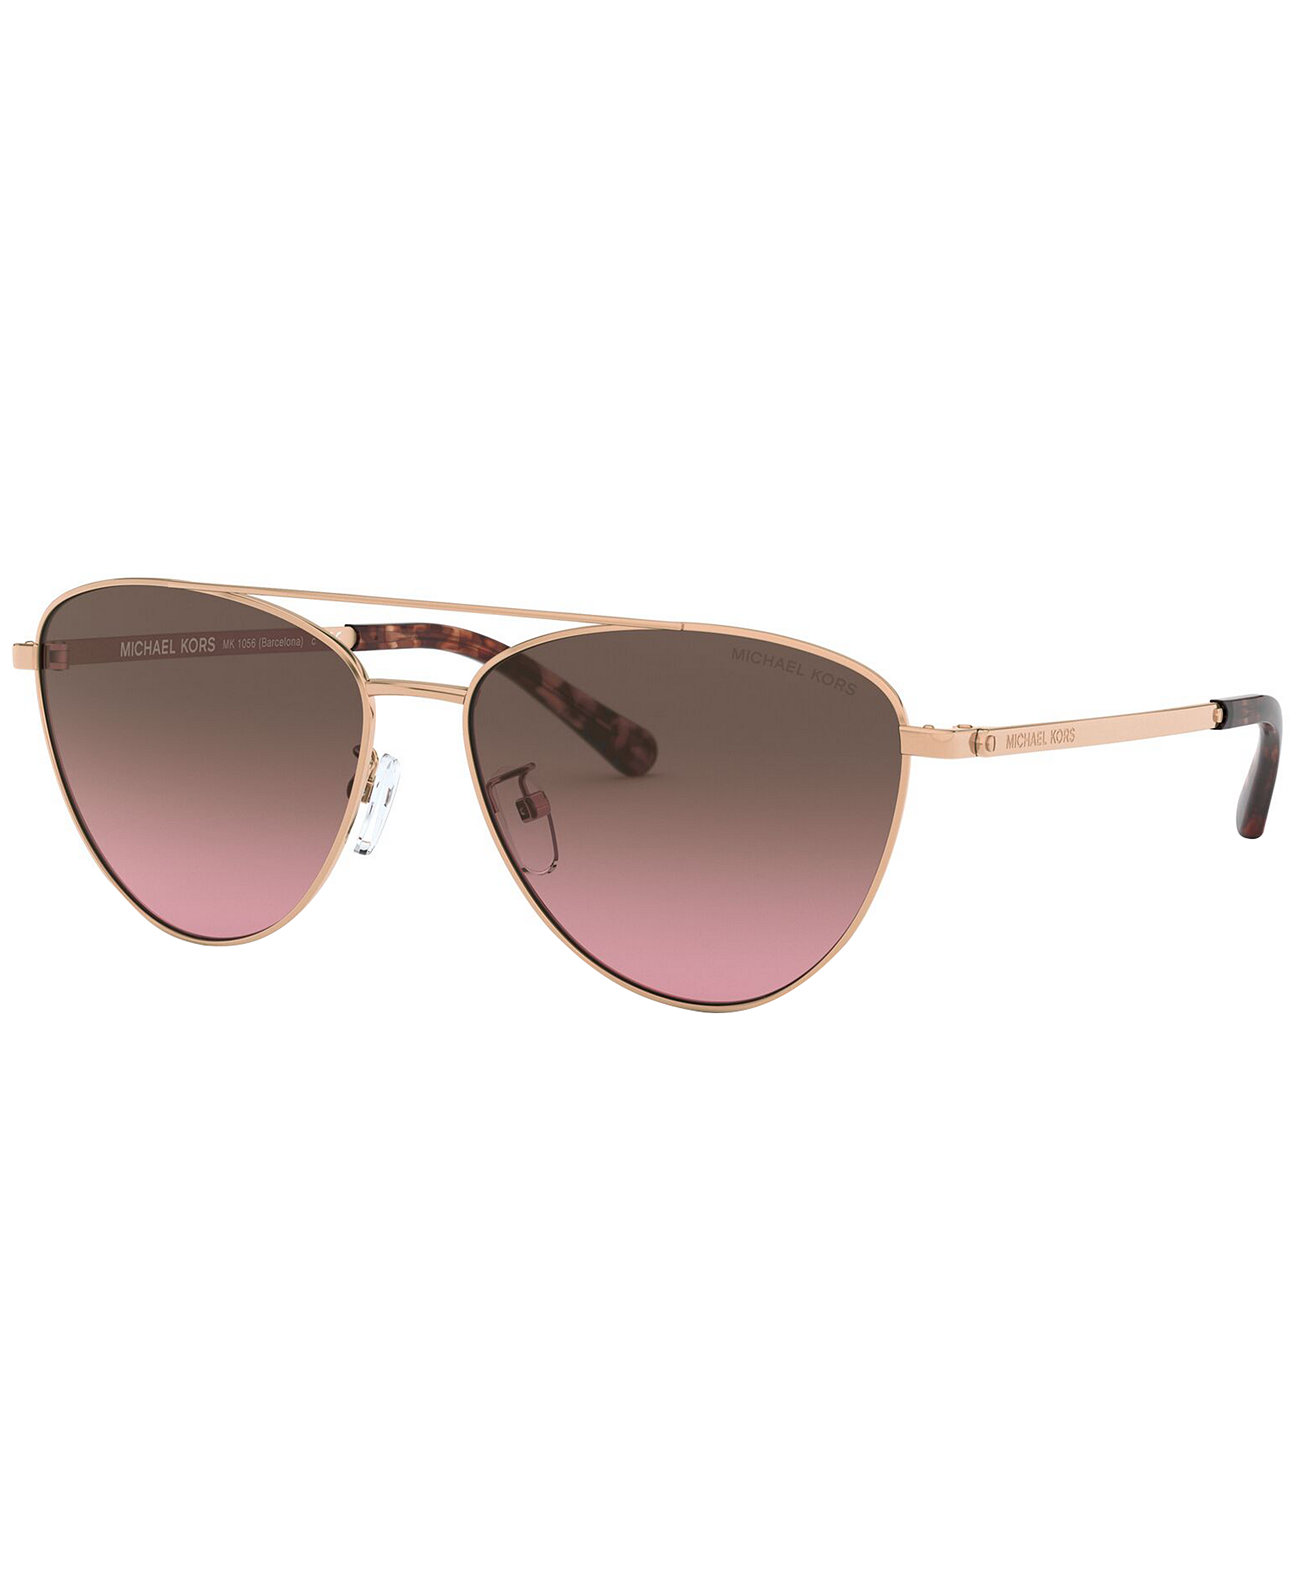 Женские солнцезащитные очки Barcelona, MK1056 Michael Kors